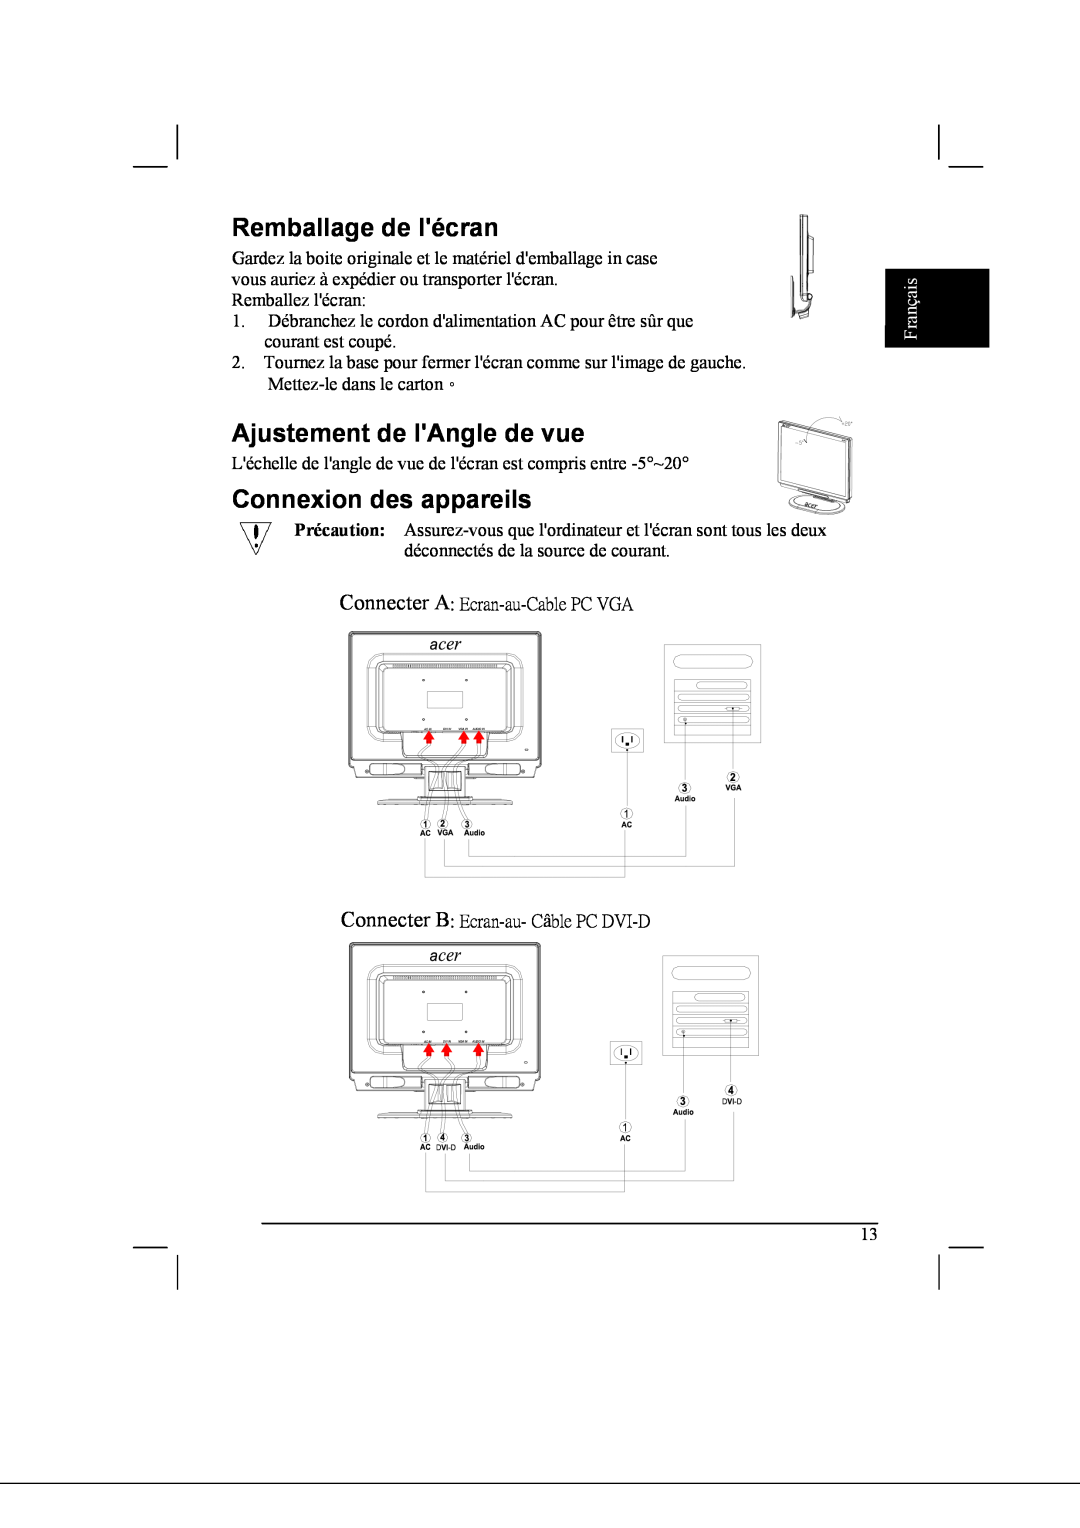 Acer AL2021 manual Remballage de lécran, Ajustement de lAngle de vue, Connexion des appareils, Français 